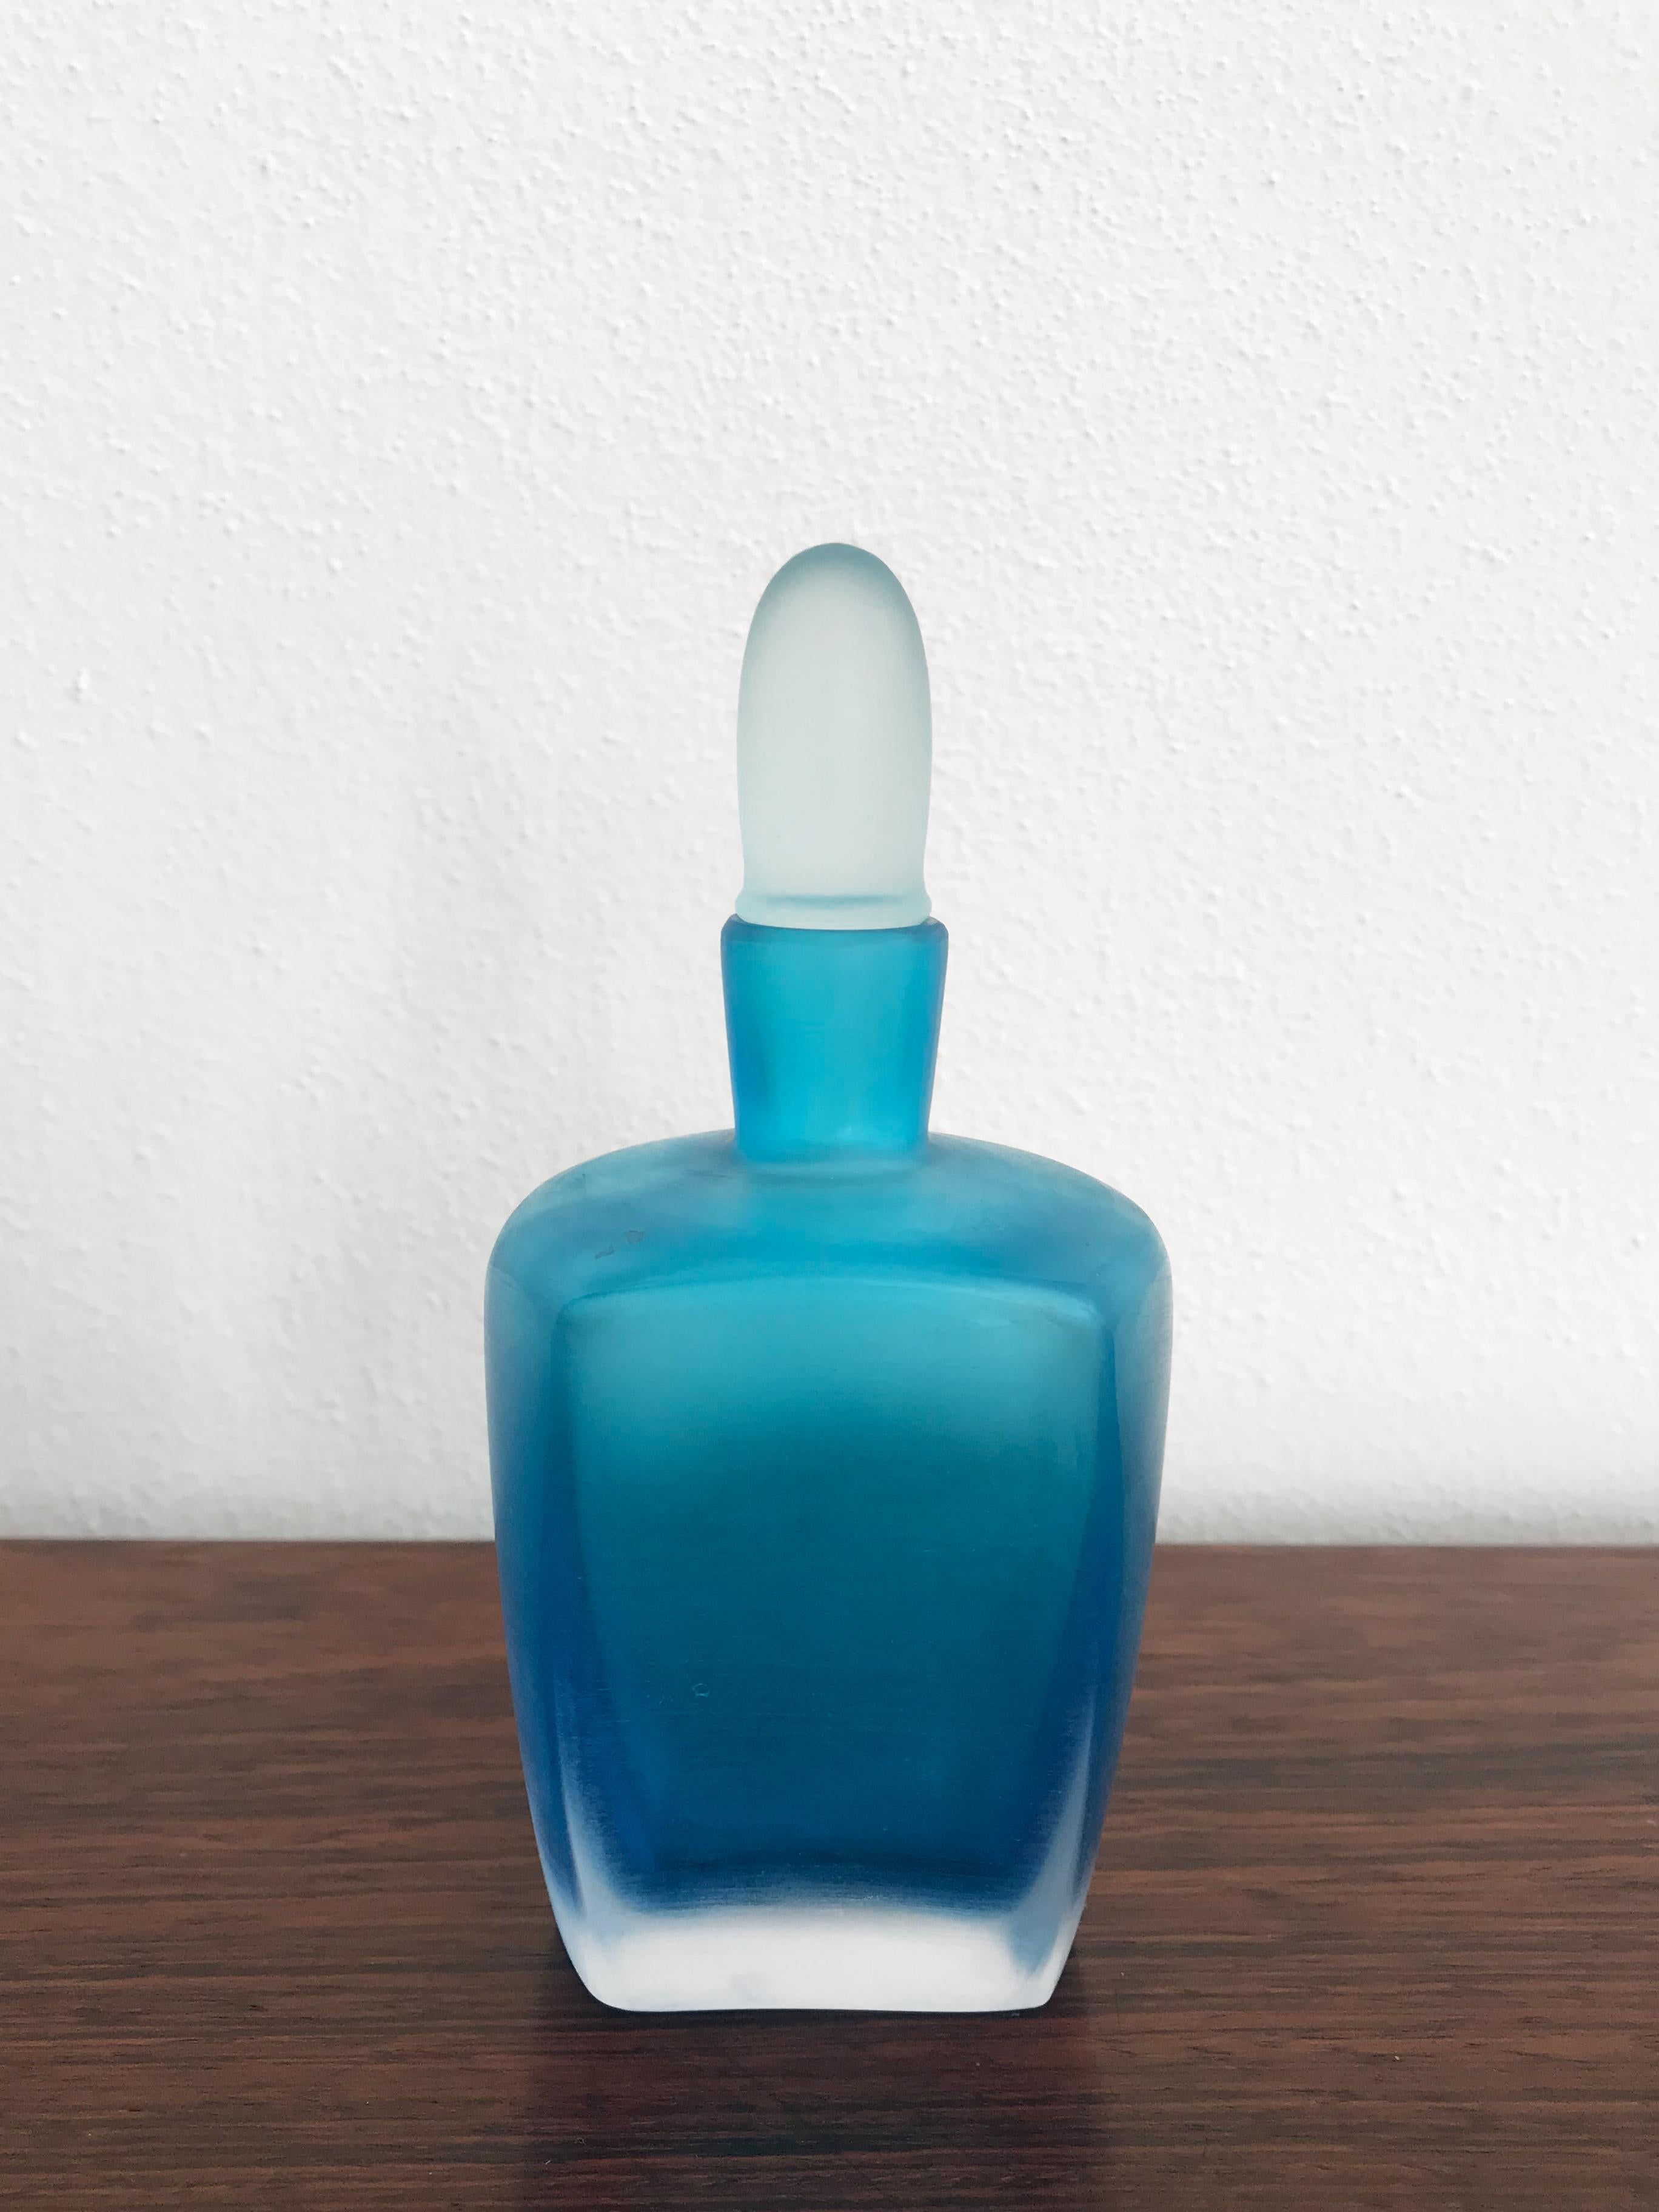 Post-Modern Venini Murano Italy Blue Glass Bottle Vase Serie “Velati” 1992 For Sale